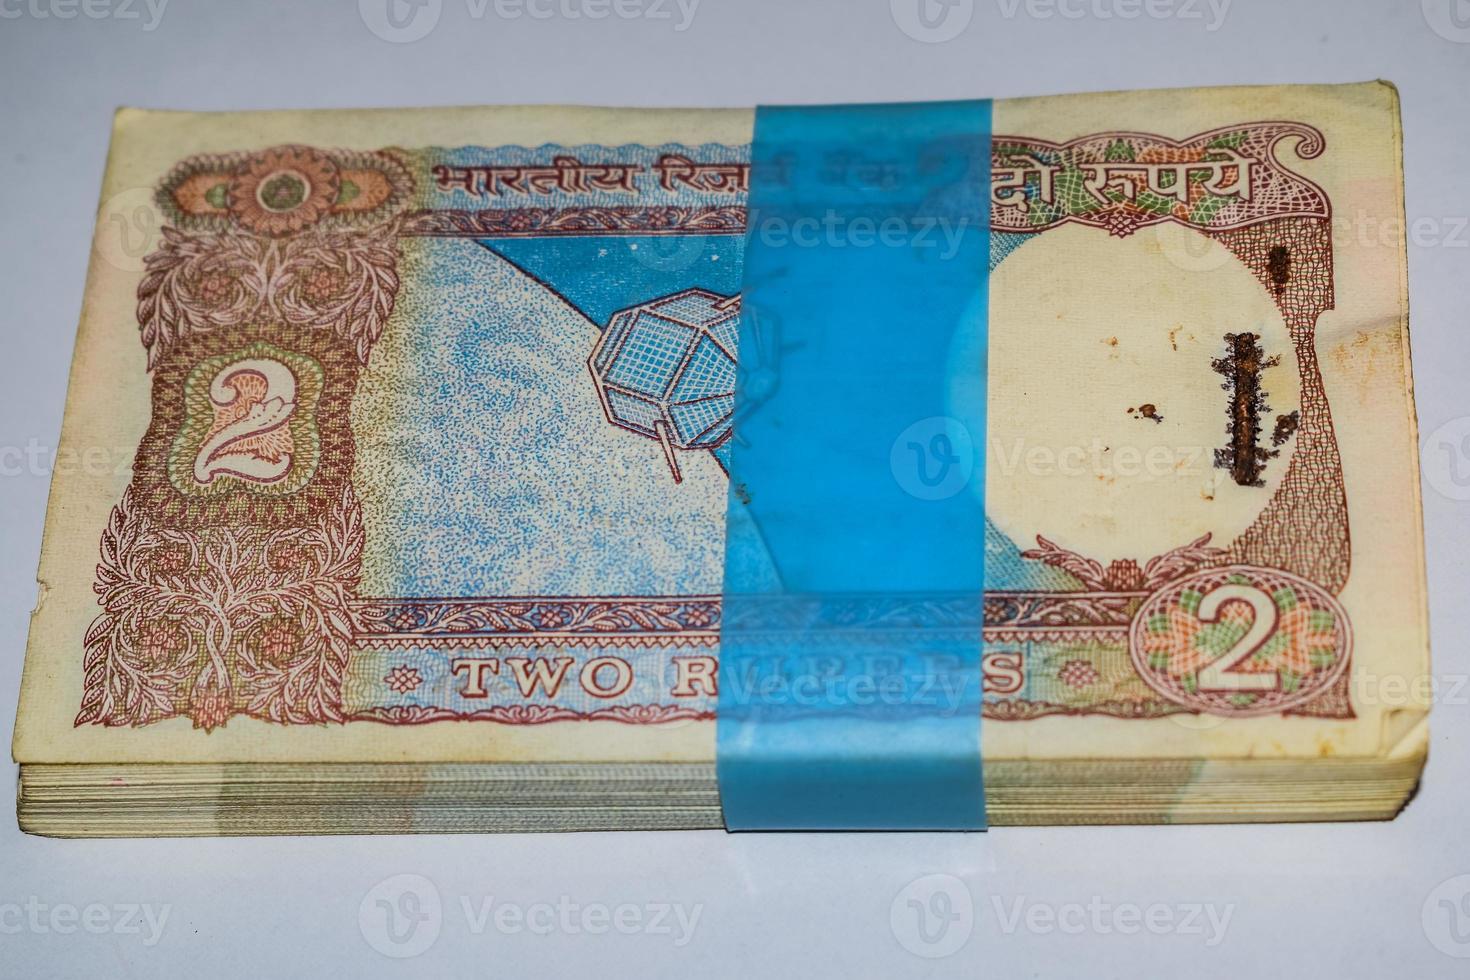 gamla två rupier sedlar kombinerade på bordet, indiska pengar på det roterande bordet. gamla indiska valutasedlar på ett roterande bord, indisk valuta på bordet foto